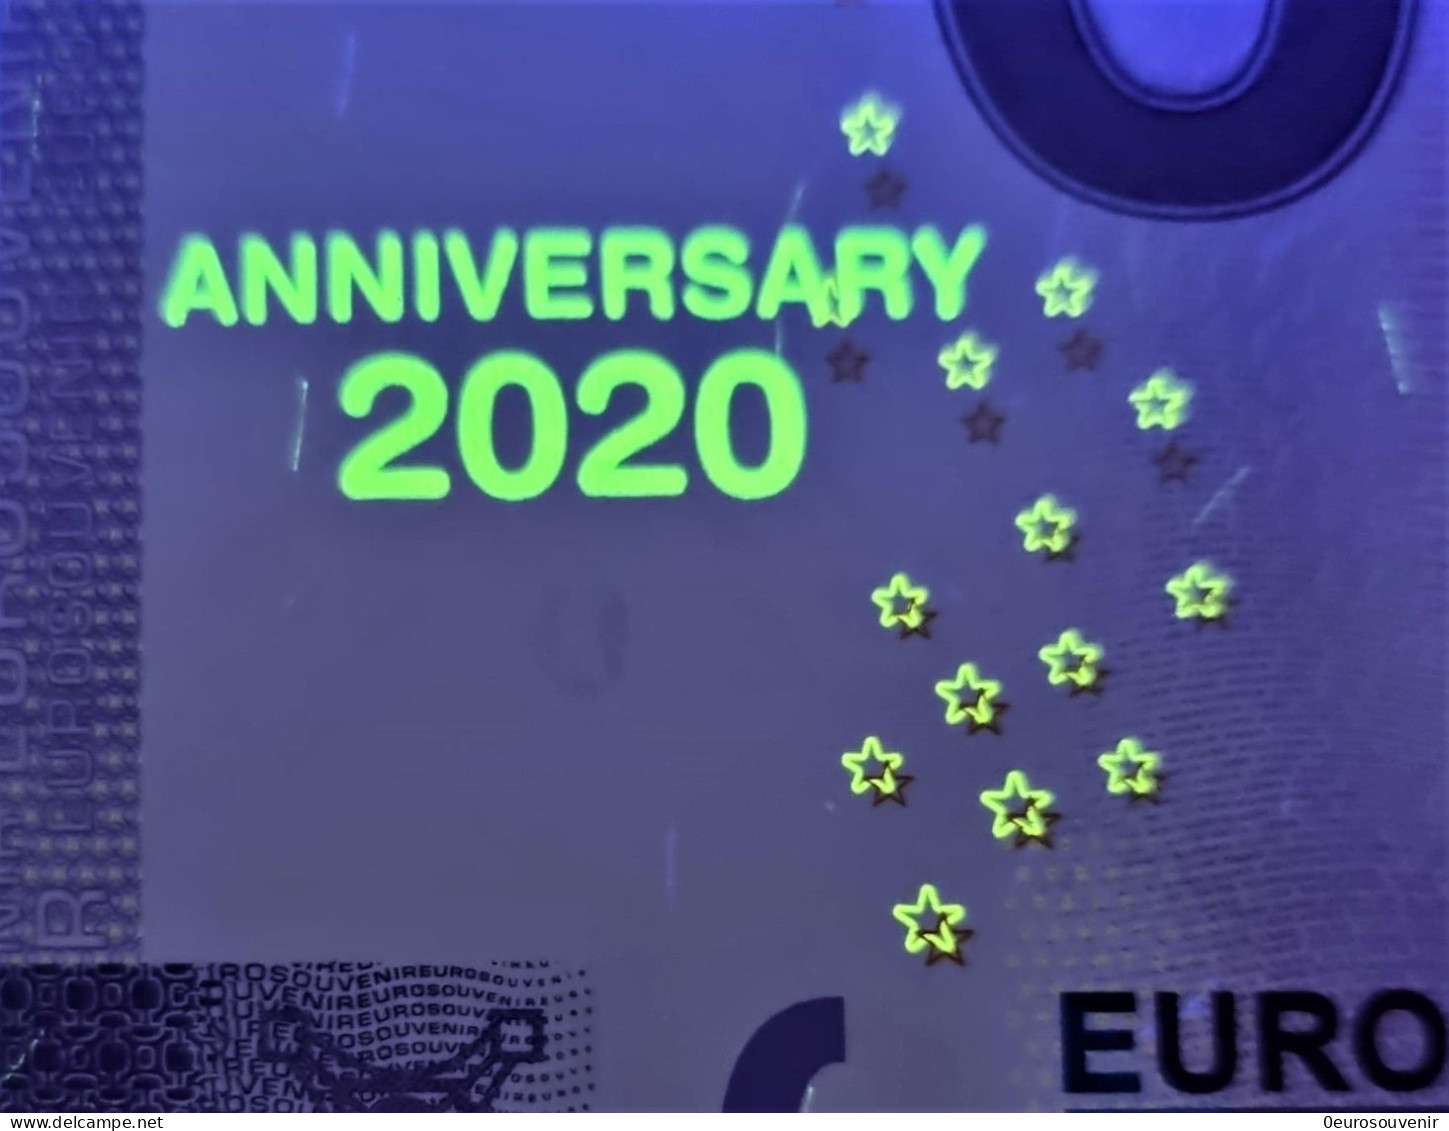 0-Euro XEEK 2021-1 SEA LIFE MÜNCHEN DEUTSCHLAND - GRÖẞTE HAI-VIELFALT Set NORMAL+ANNIVERSARY - Essais Privés / Non-officiels